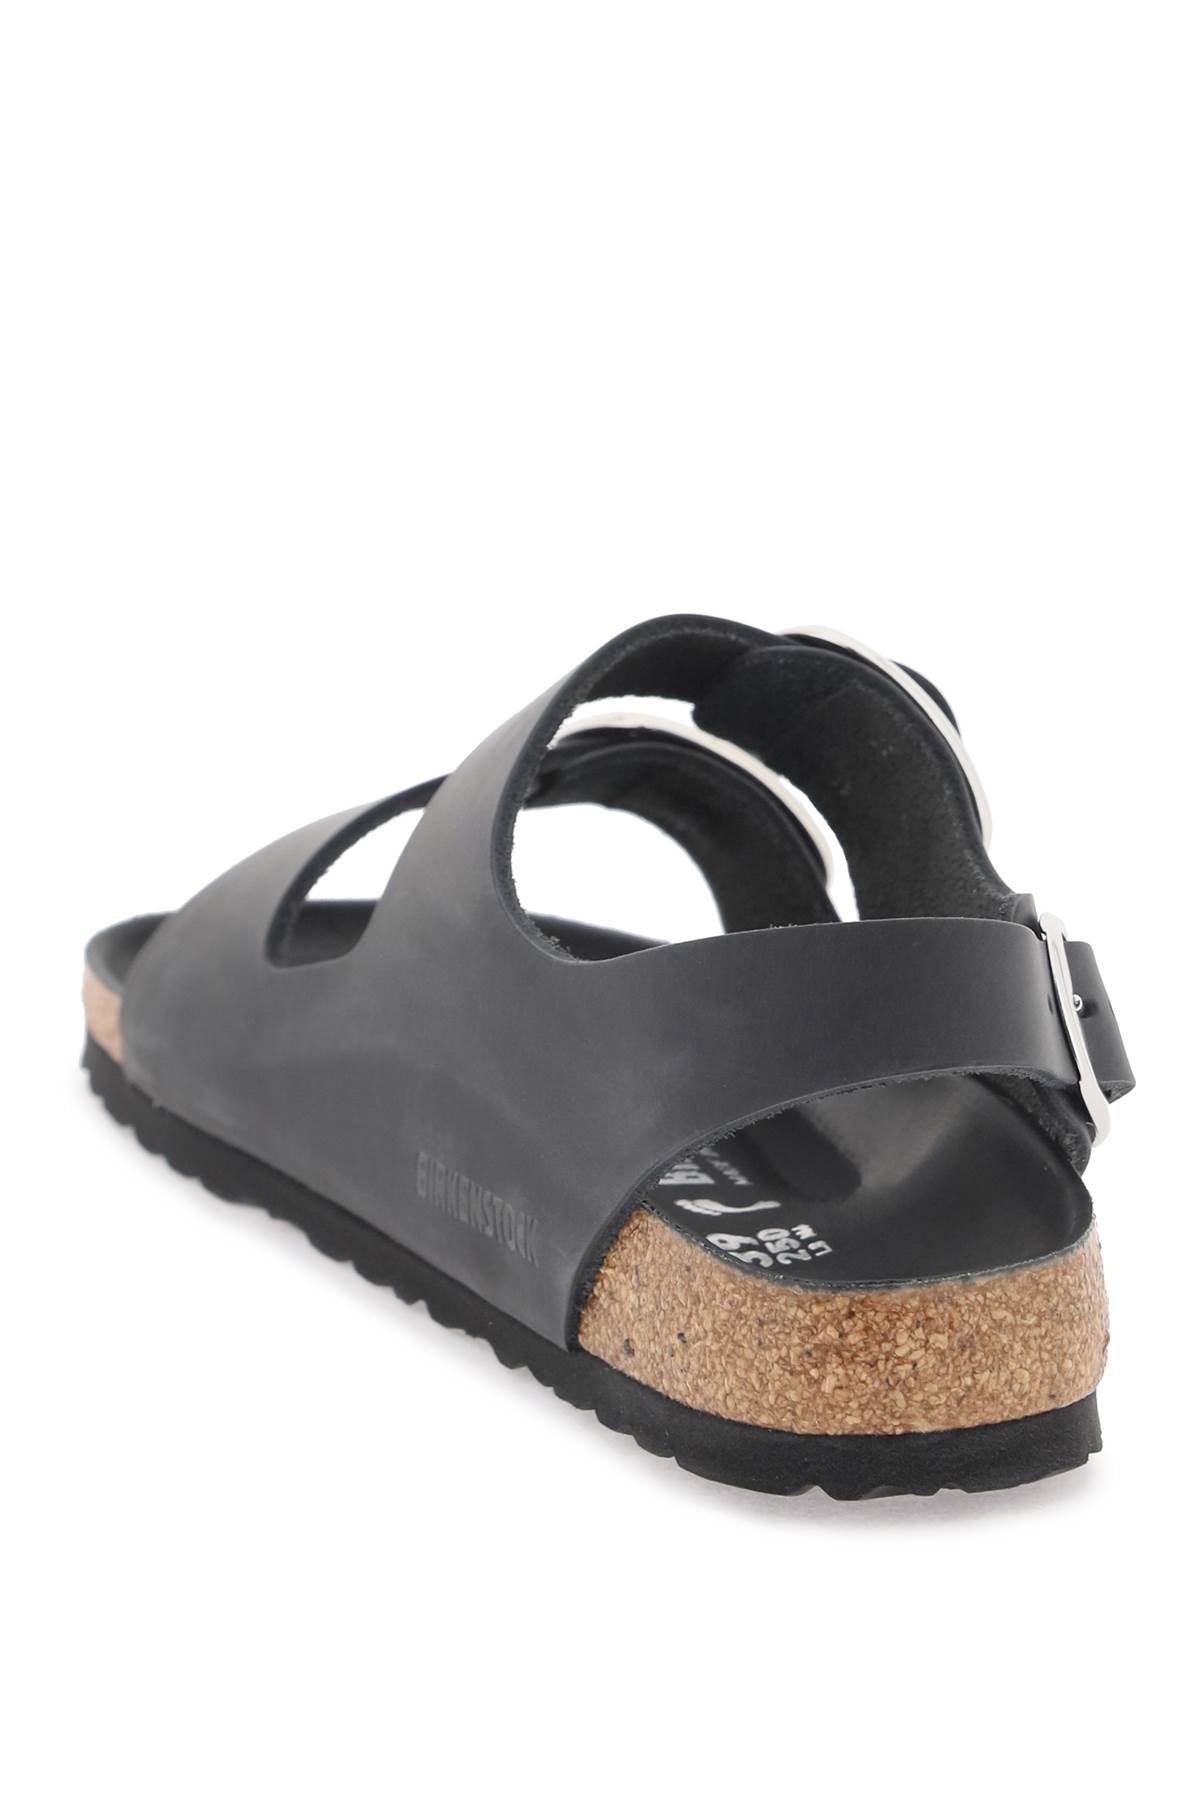 Birkenstock milano big buckle sandals-2